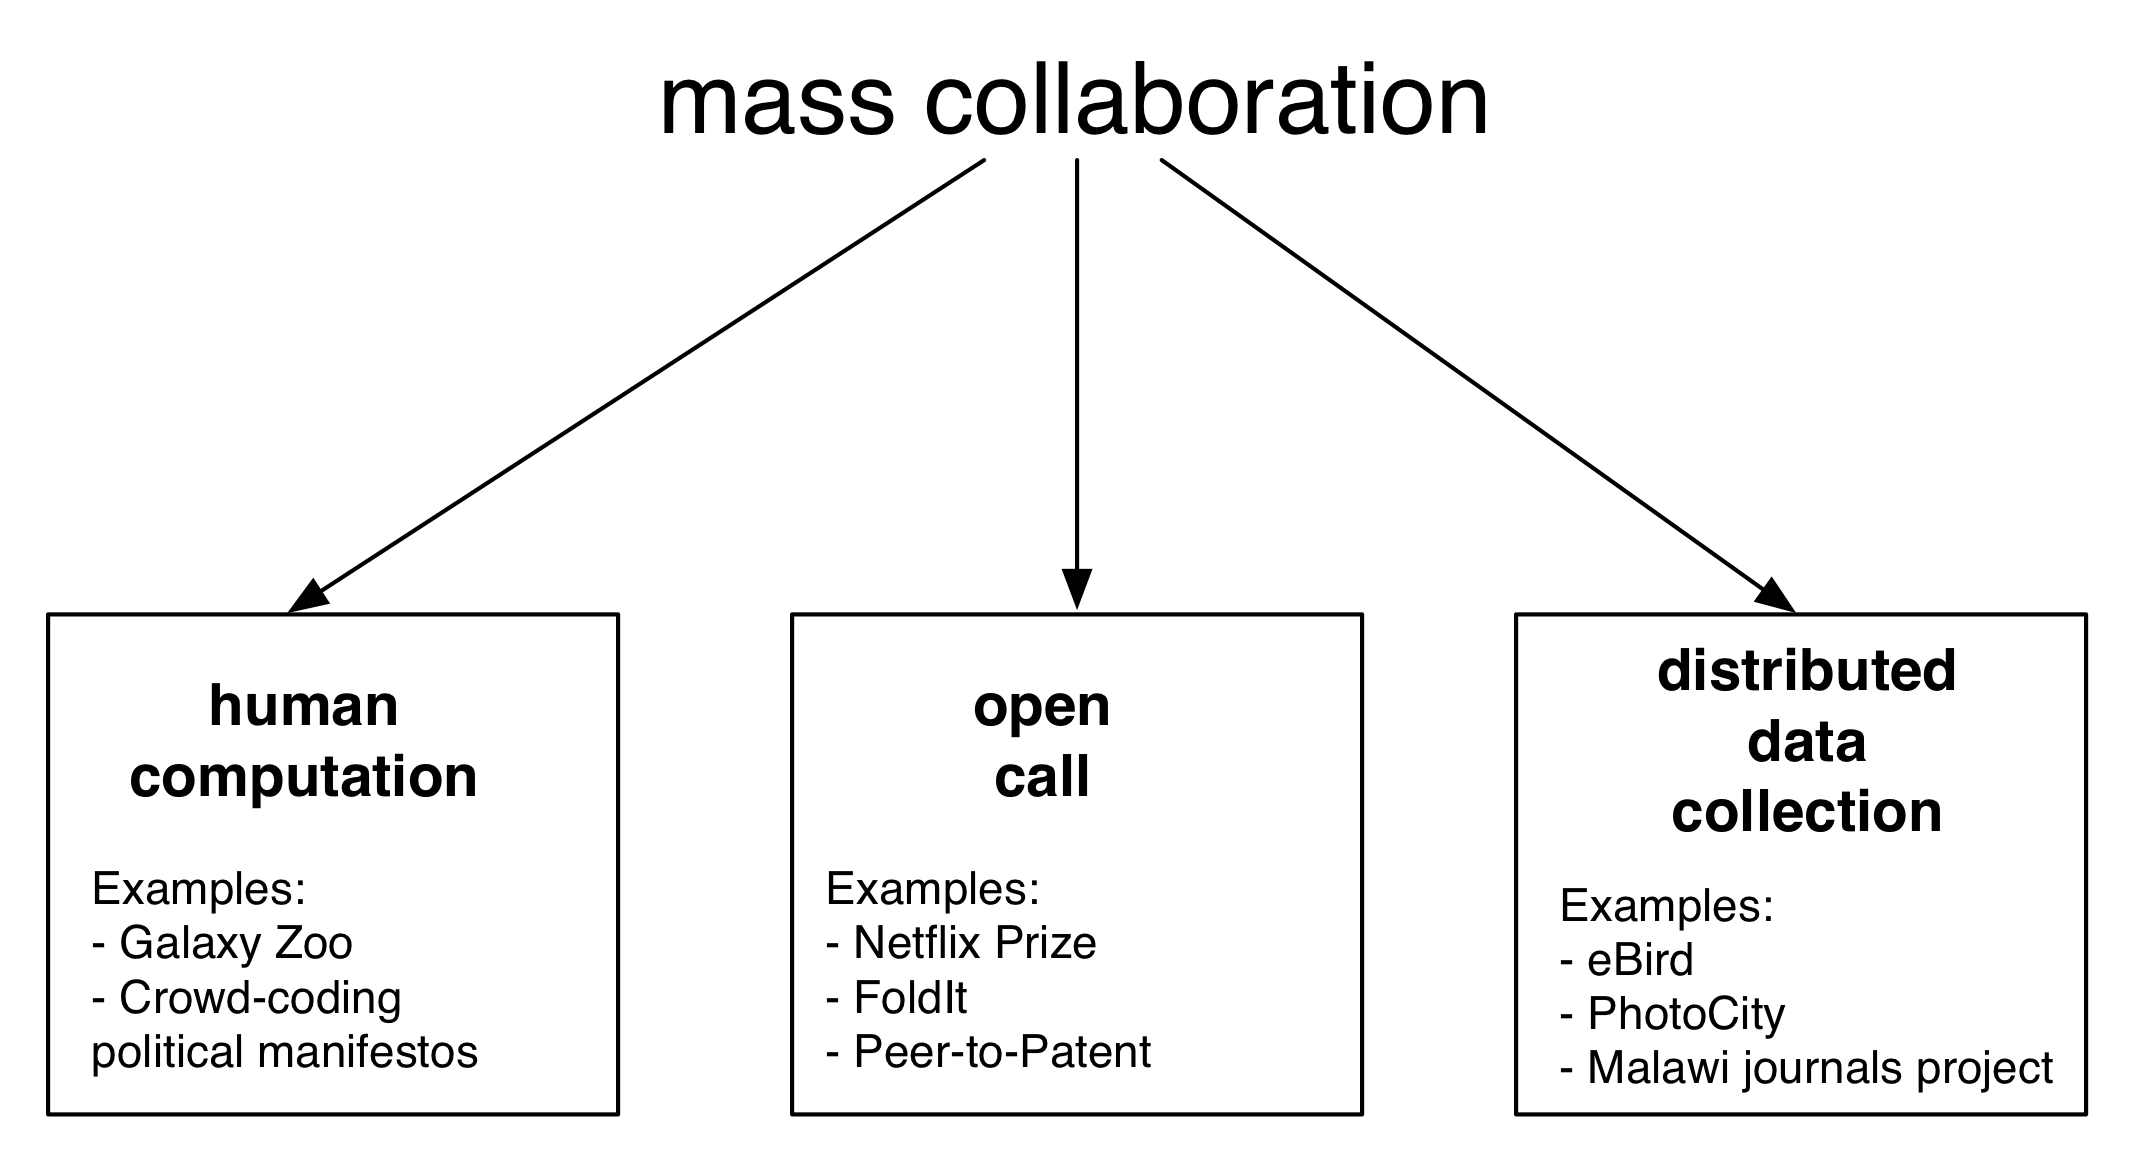 चित्रा 5.1: मास सहयोग योजनाबद्ध। मानव गणना, खुले कॉल, और वितरित डेटा संग्रह: इस अध्याय में बड़े पैमाने पर सहयोग के तीन मुख्य रूपों के आसपास का आयोजन किया जाता है। आम तौर पर, बड़े पैमाने पर सहयोग ऐसे नागरिक विज्ञान, Crowdsourcing, और सामूहिक खुफिया के रूप में खेतों से विचारों को जोड़ती है।